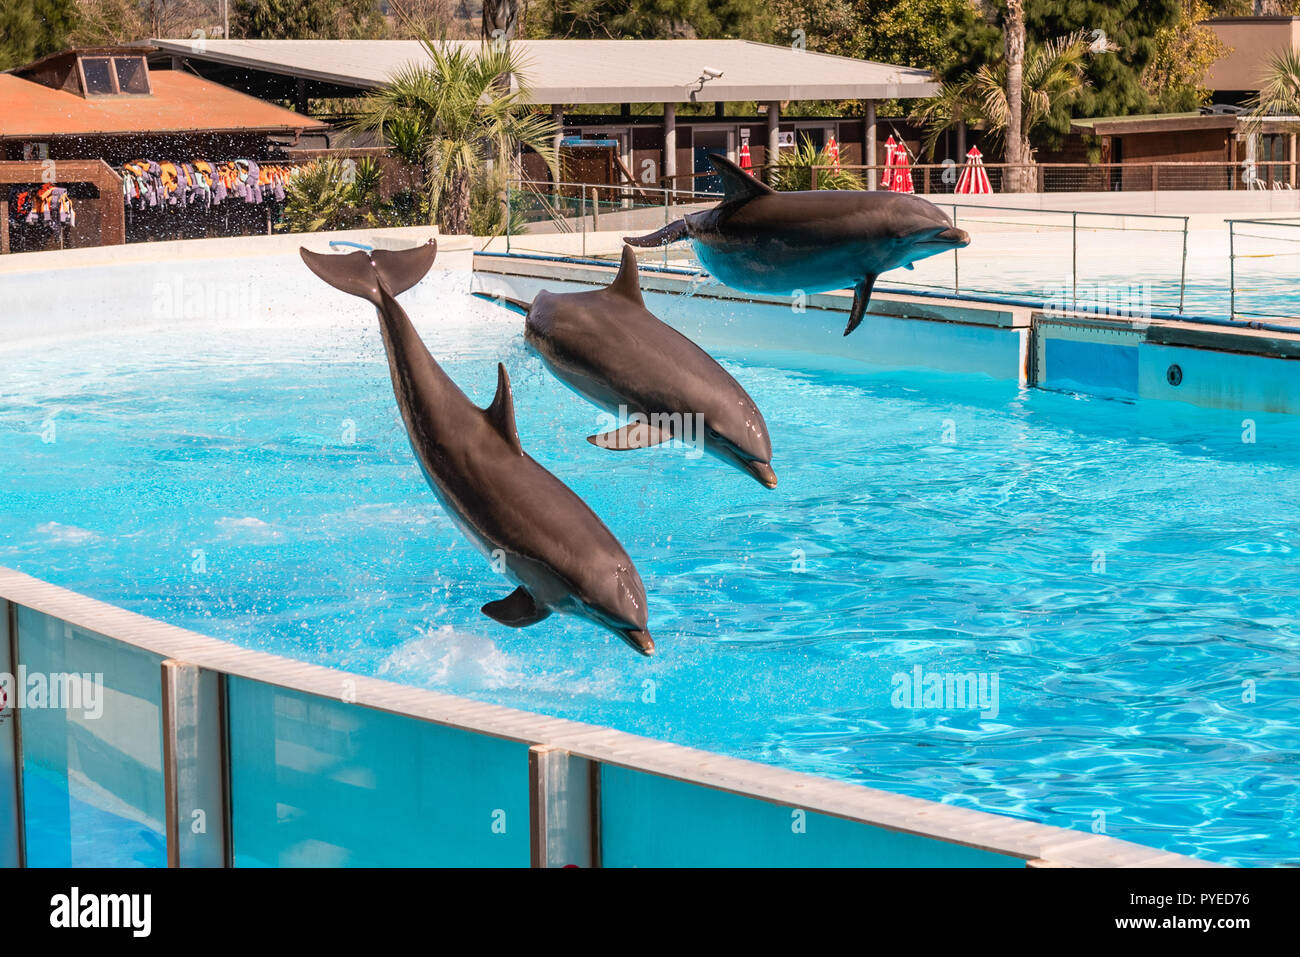 Trois beaux dauphins sautant dans une piscine montrant leurs capacités acrobatiques Banque D'Images